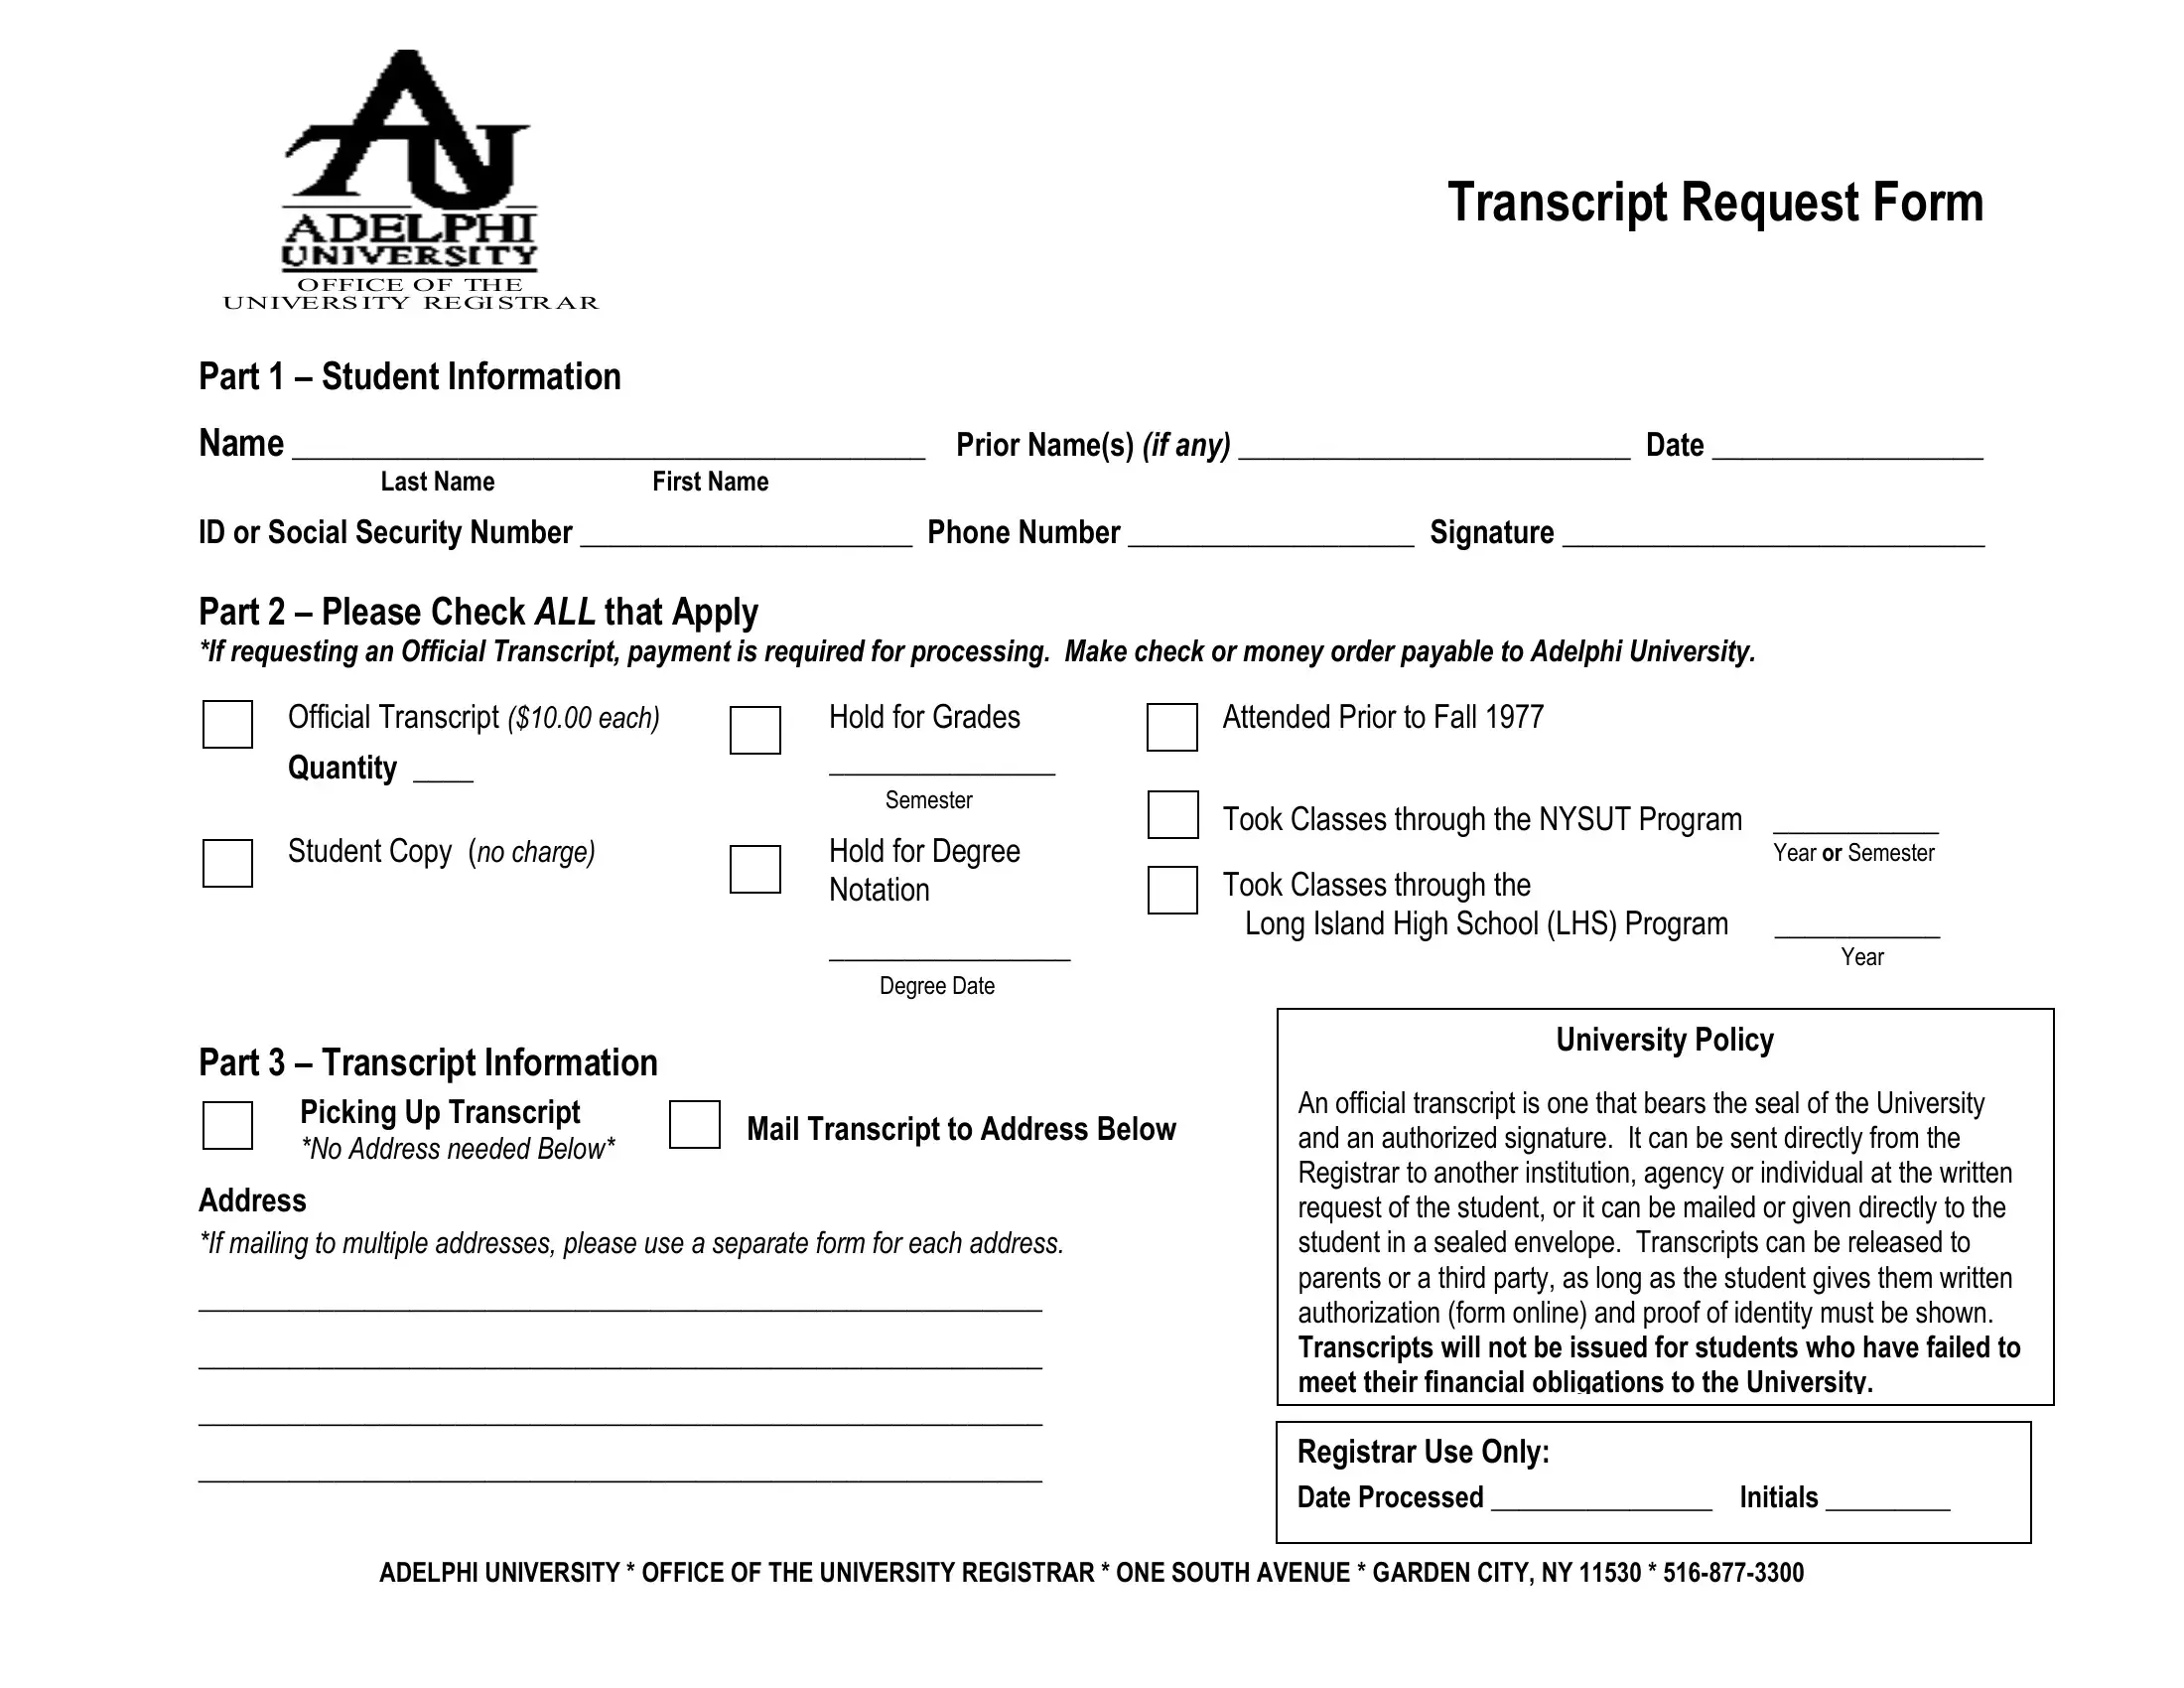 Adelphi Transcript Request Form Preview